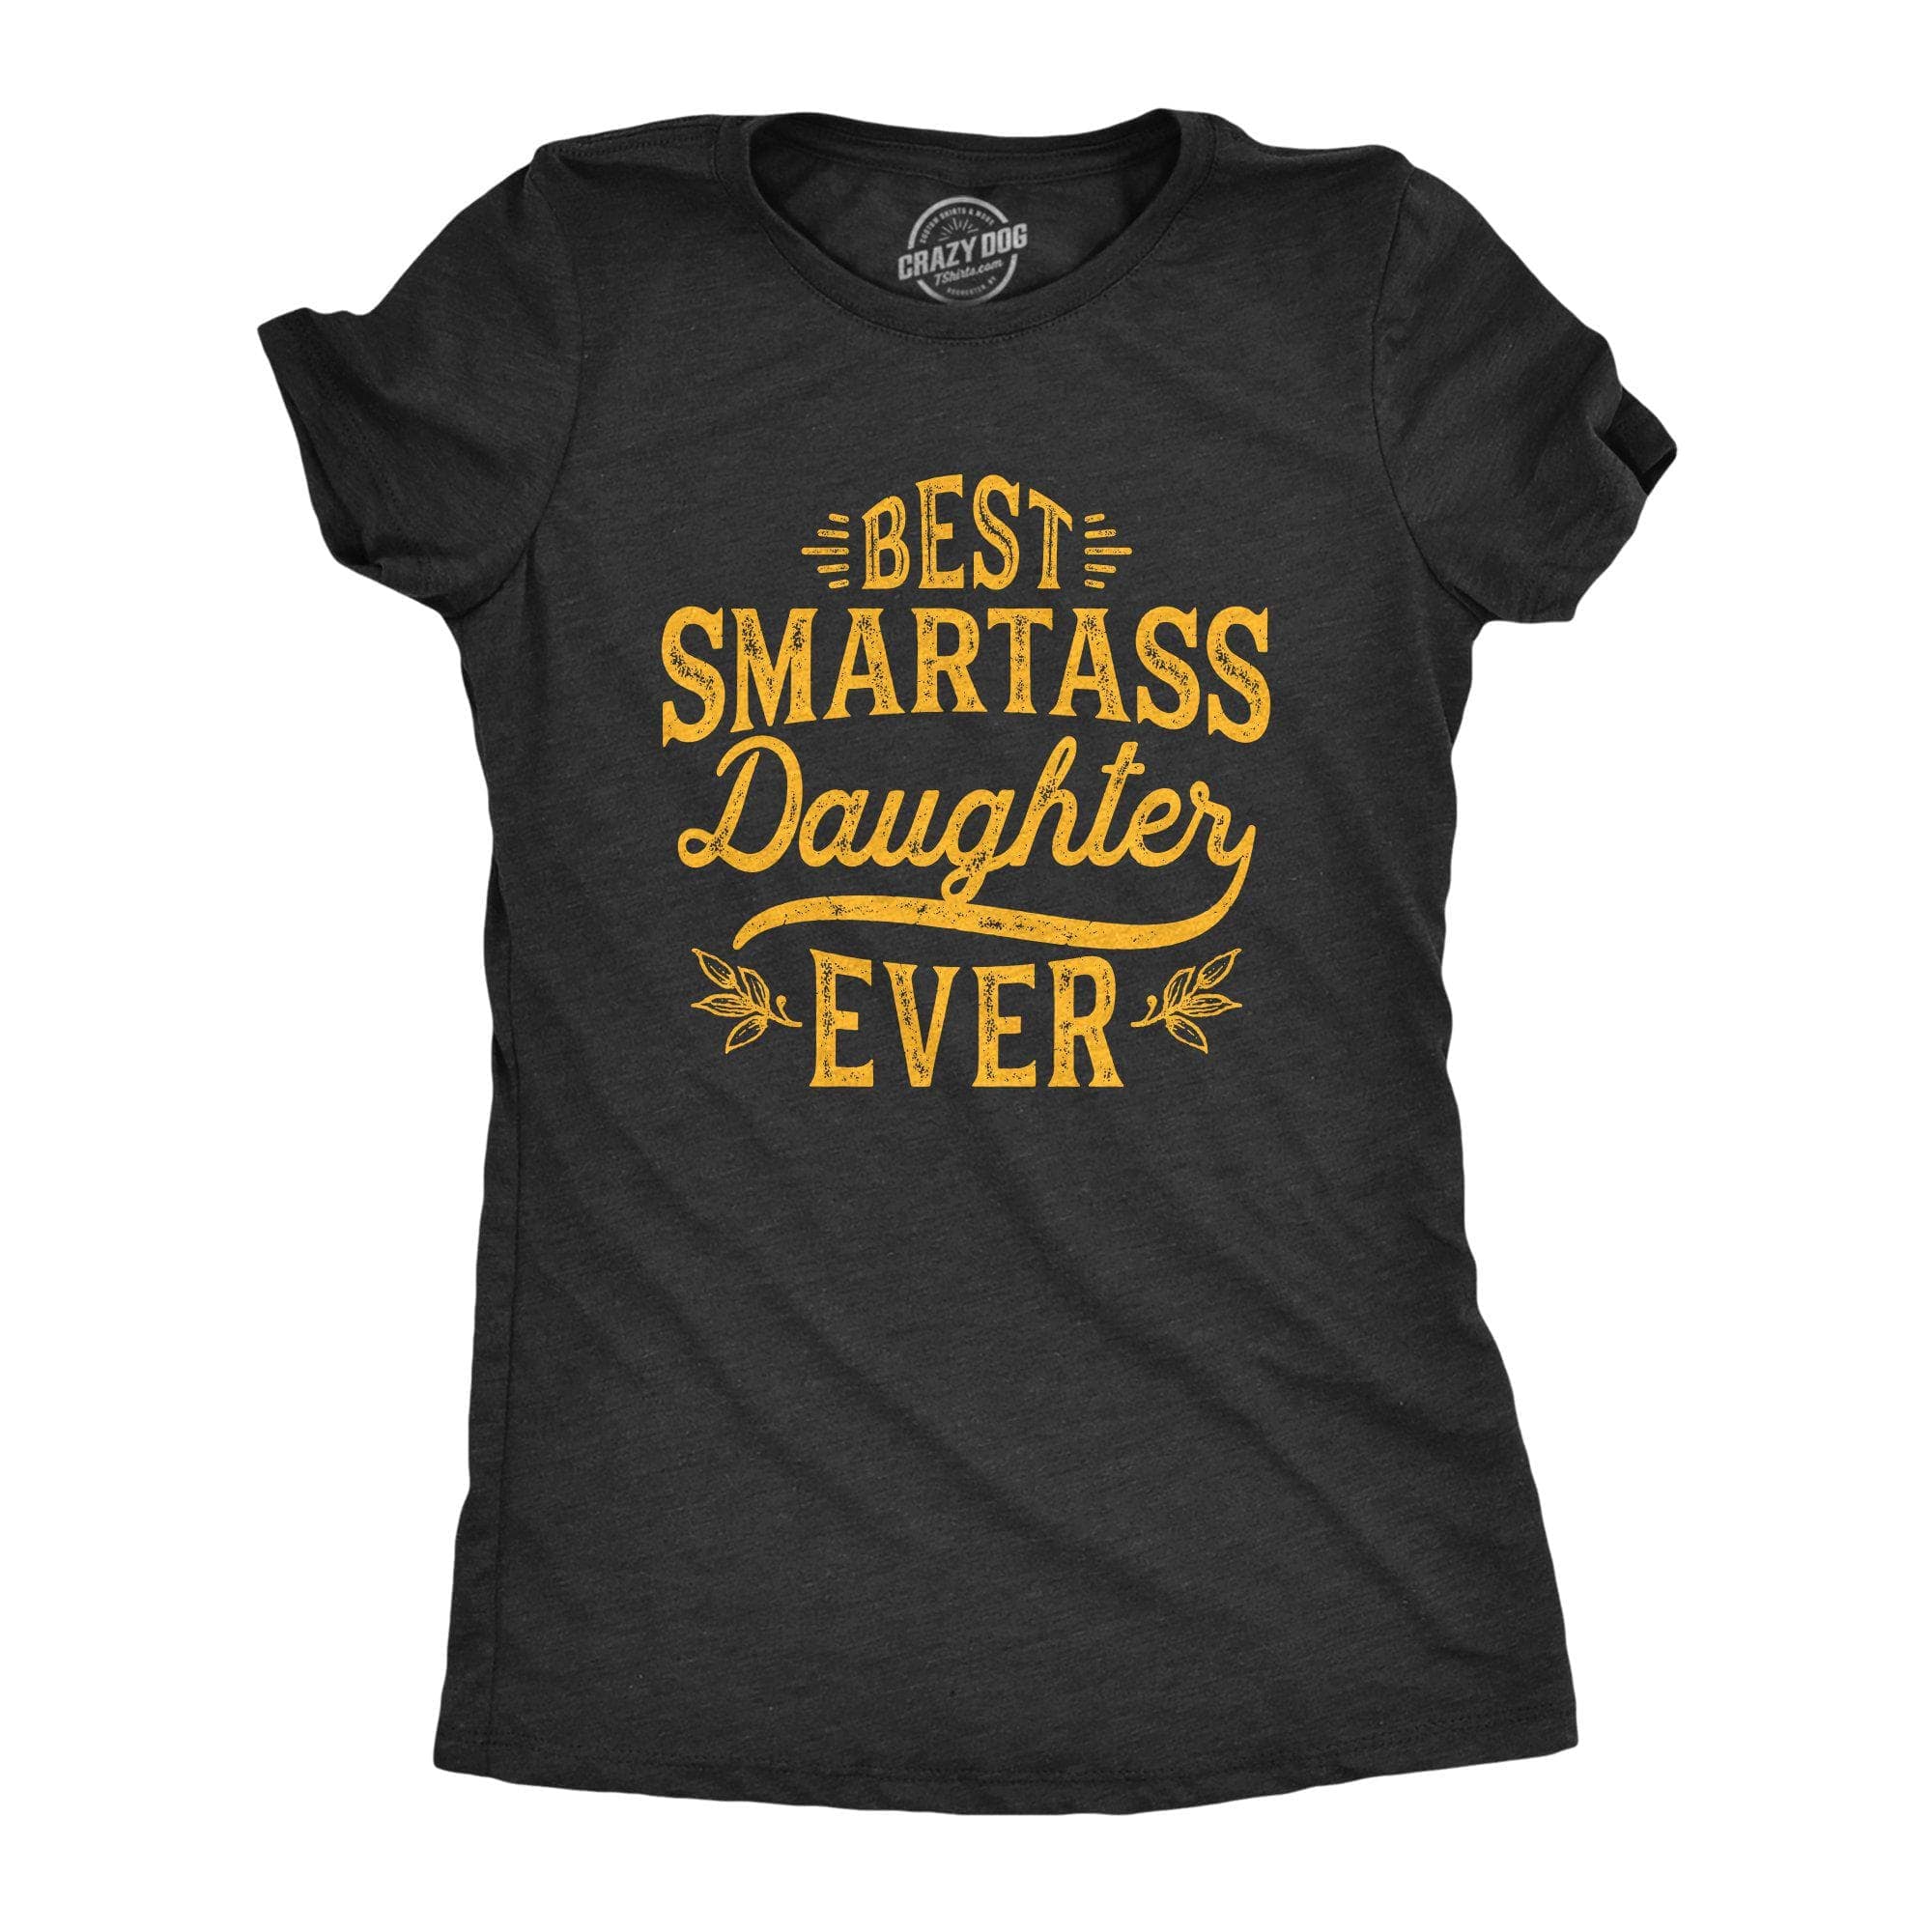 Best Smartass Daughter Ever Women's Tshirt - Crazy Dog T-Shirts